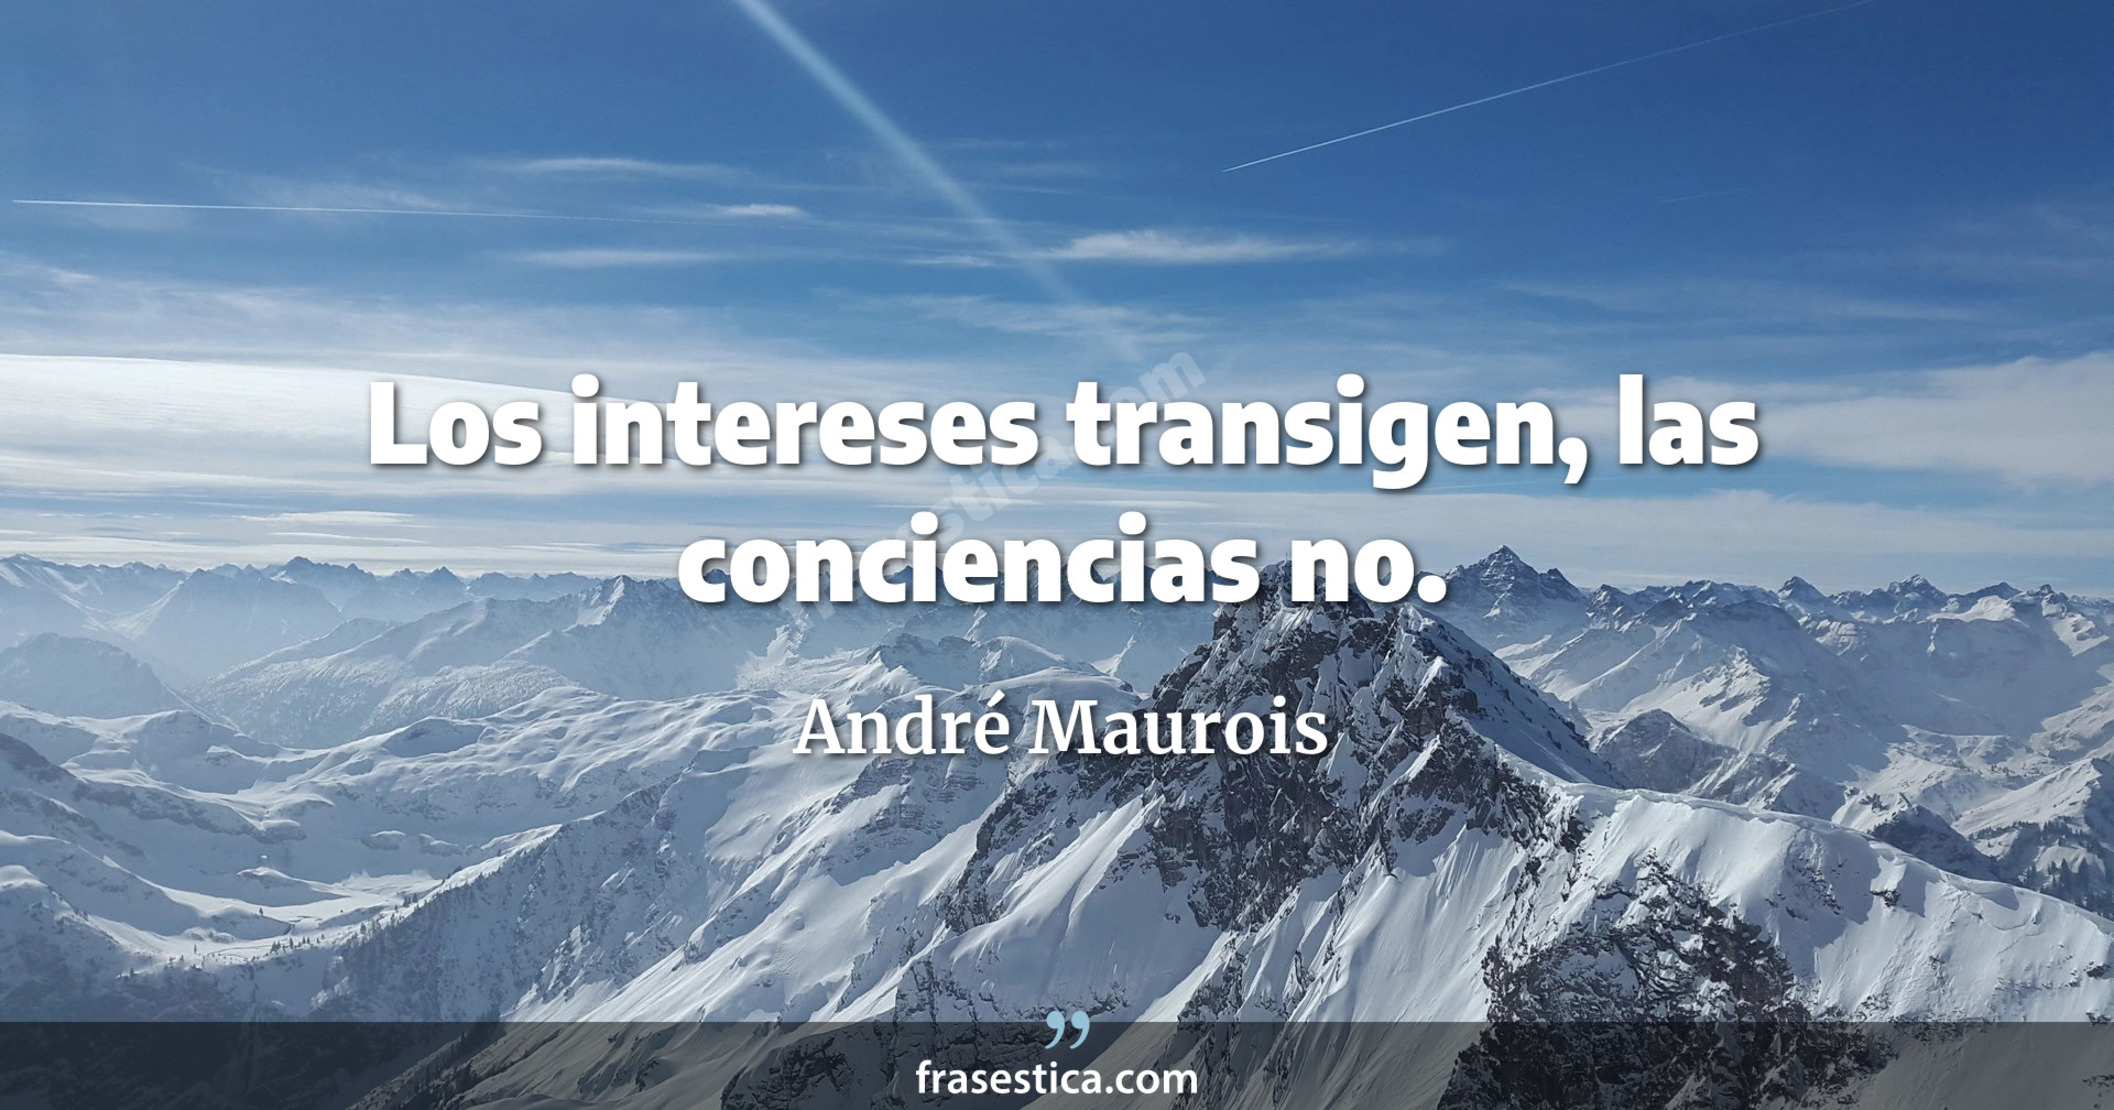 Los intereses transigen, las conciencias no. - André Maurois